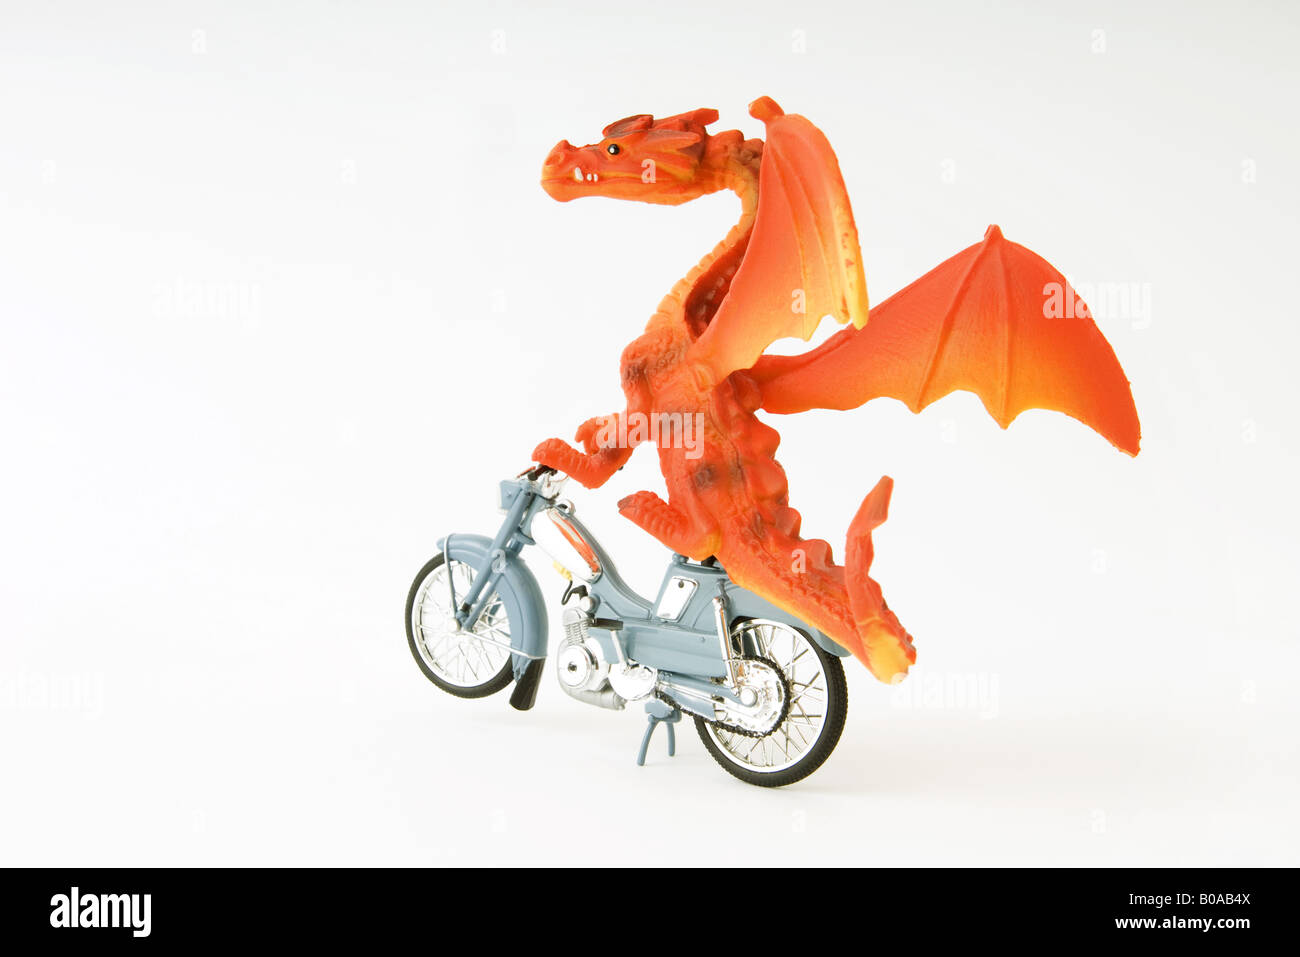 Toy dragon riding motorbike Stock Photo